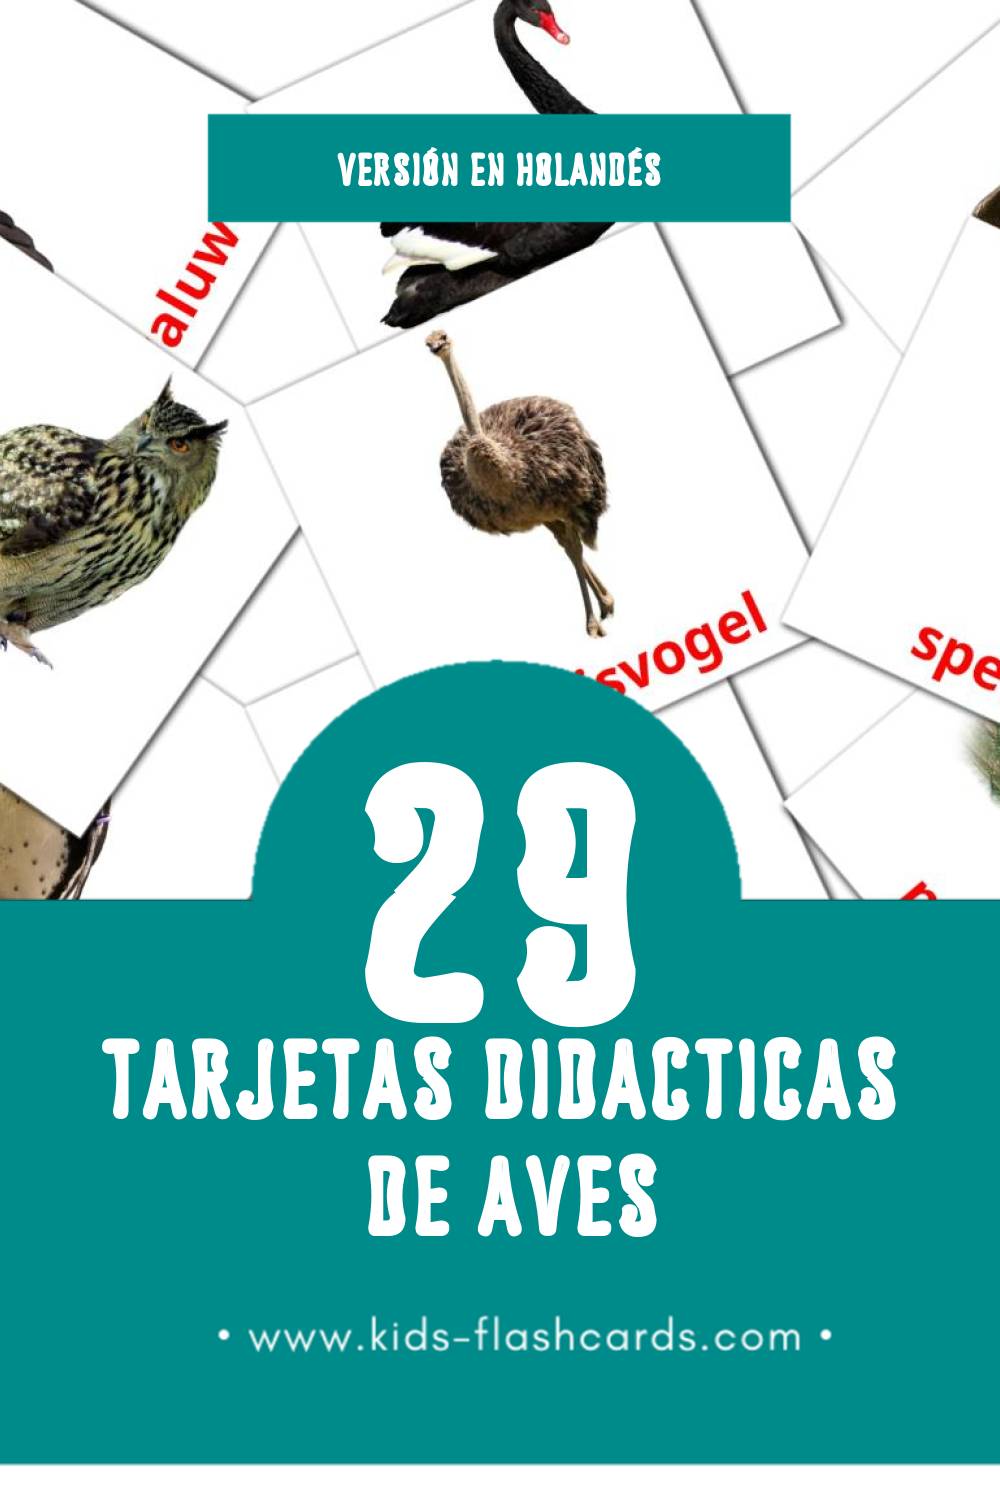 Tarjetas visuales de Vogels para niños pequeños (29 tarjetas en Holandés)